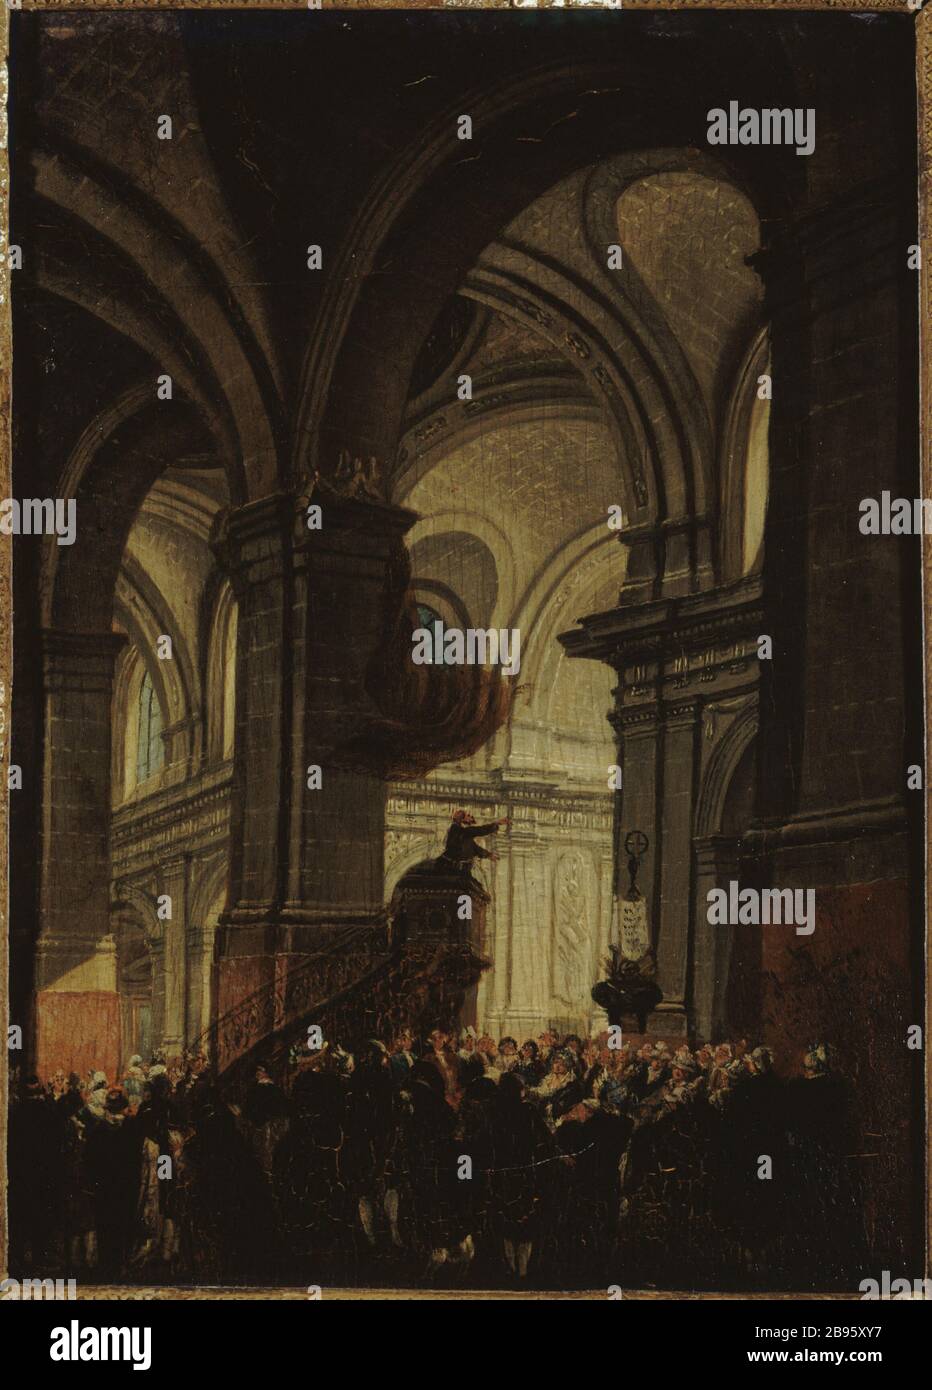 SERMON IN THE CHURCH OF SAINT-ROCH Pierre-Antoine Demachy (1723-1807). 'Sermon dans l'église Saint-Roch'. Huile sur bois. Paris, musée Carnavalet. Stock Photo